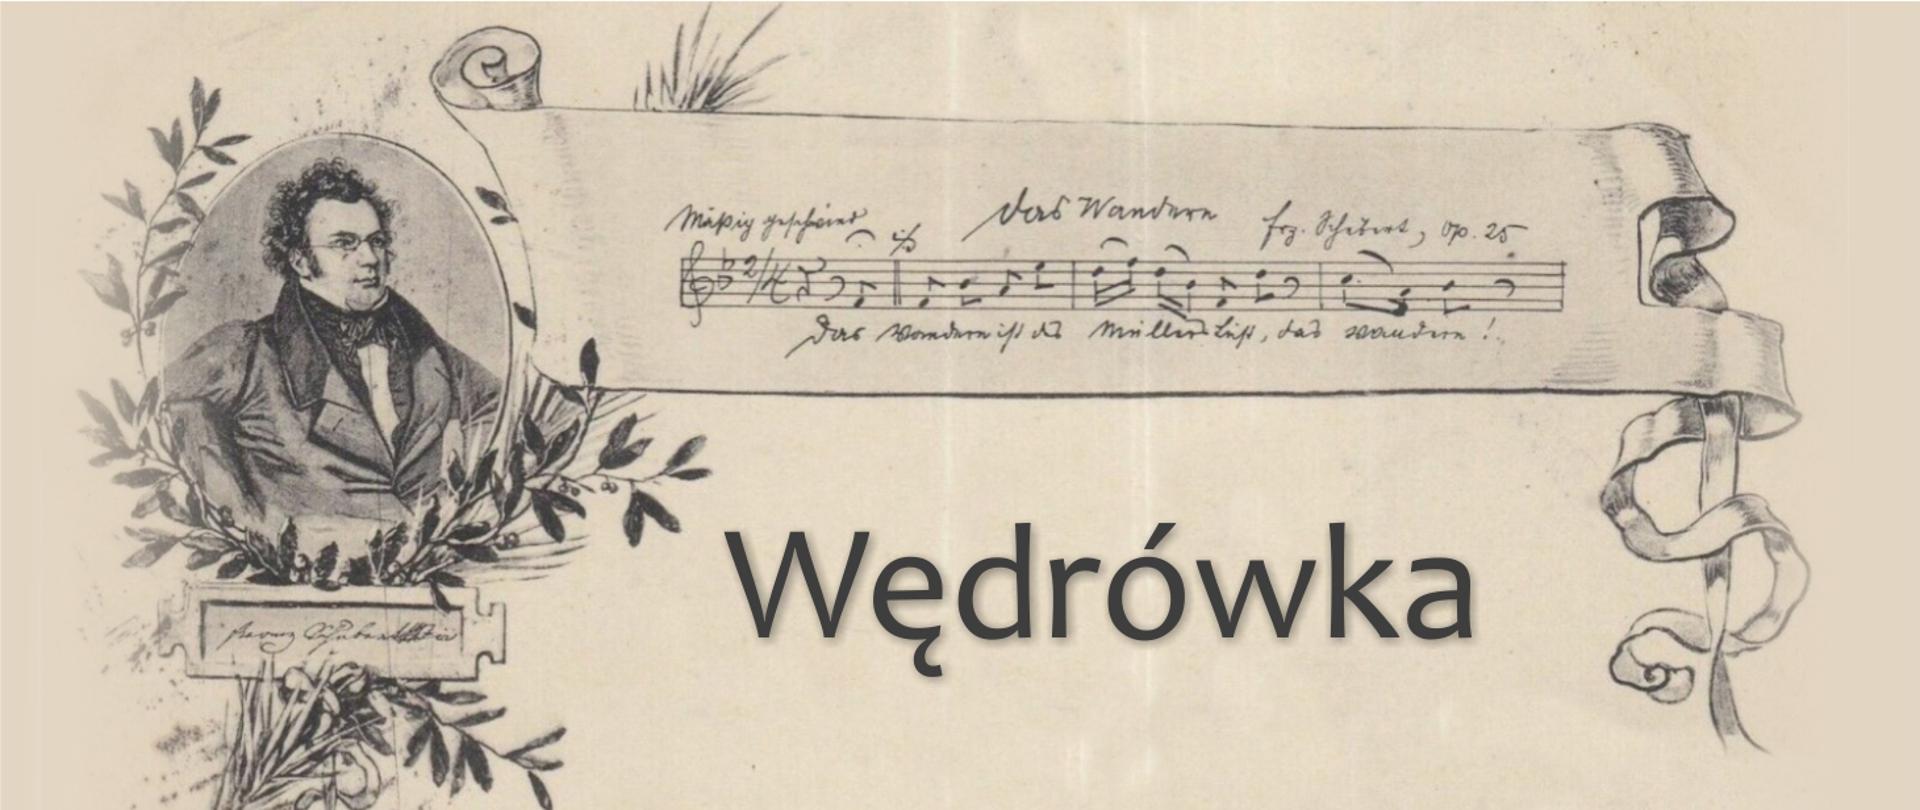 Grafika prezentuje podobiznę Schuberta, incypit pieśni das Wandern oraz napis wędrówka